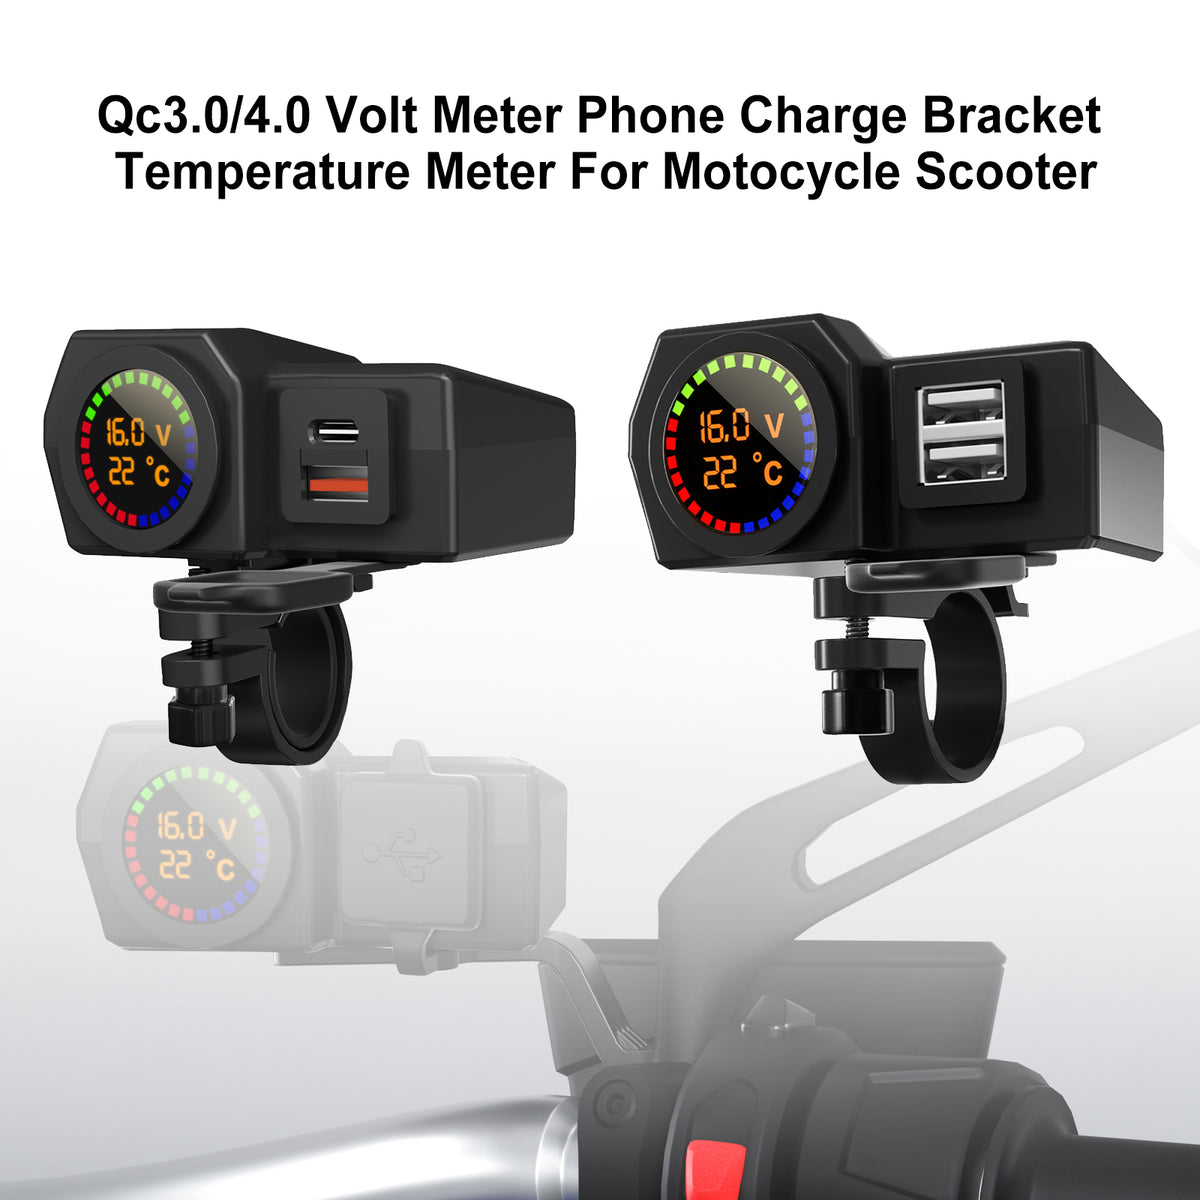 Misuratore di temperatura della staffa di ricarica del telefono Qc3.0 Voltmetro per scooter da moto NeroB generico